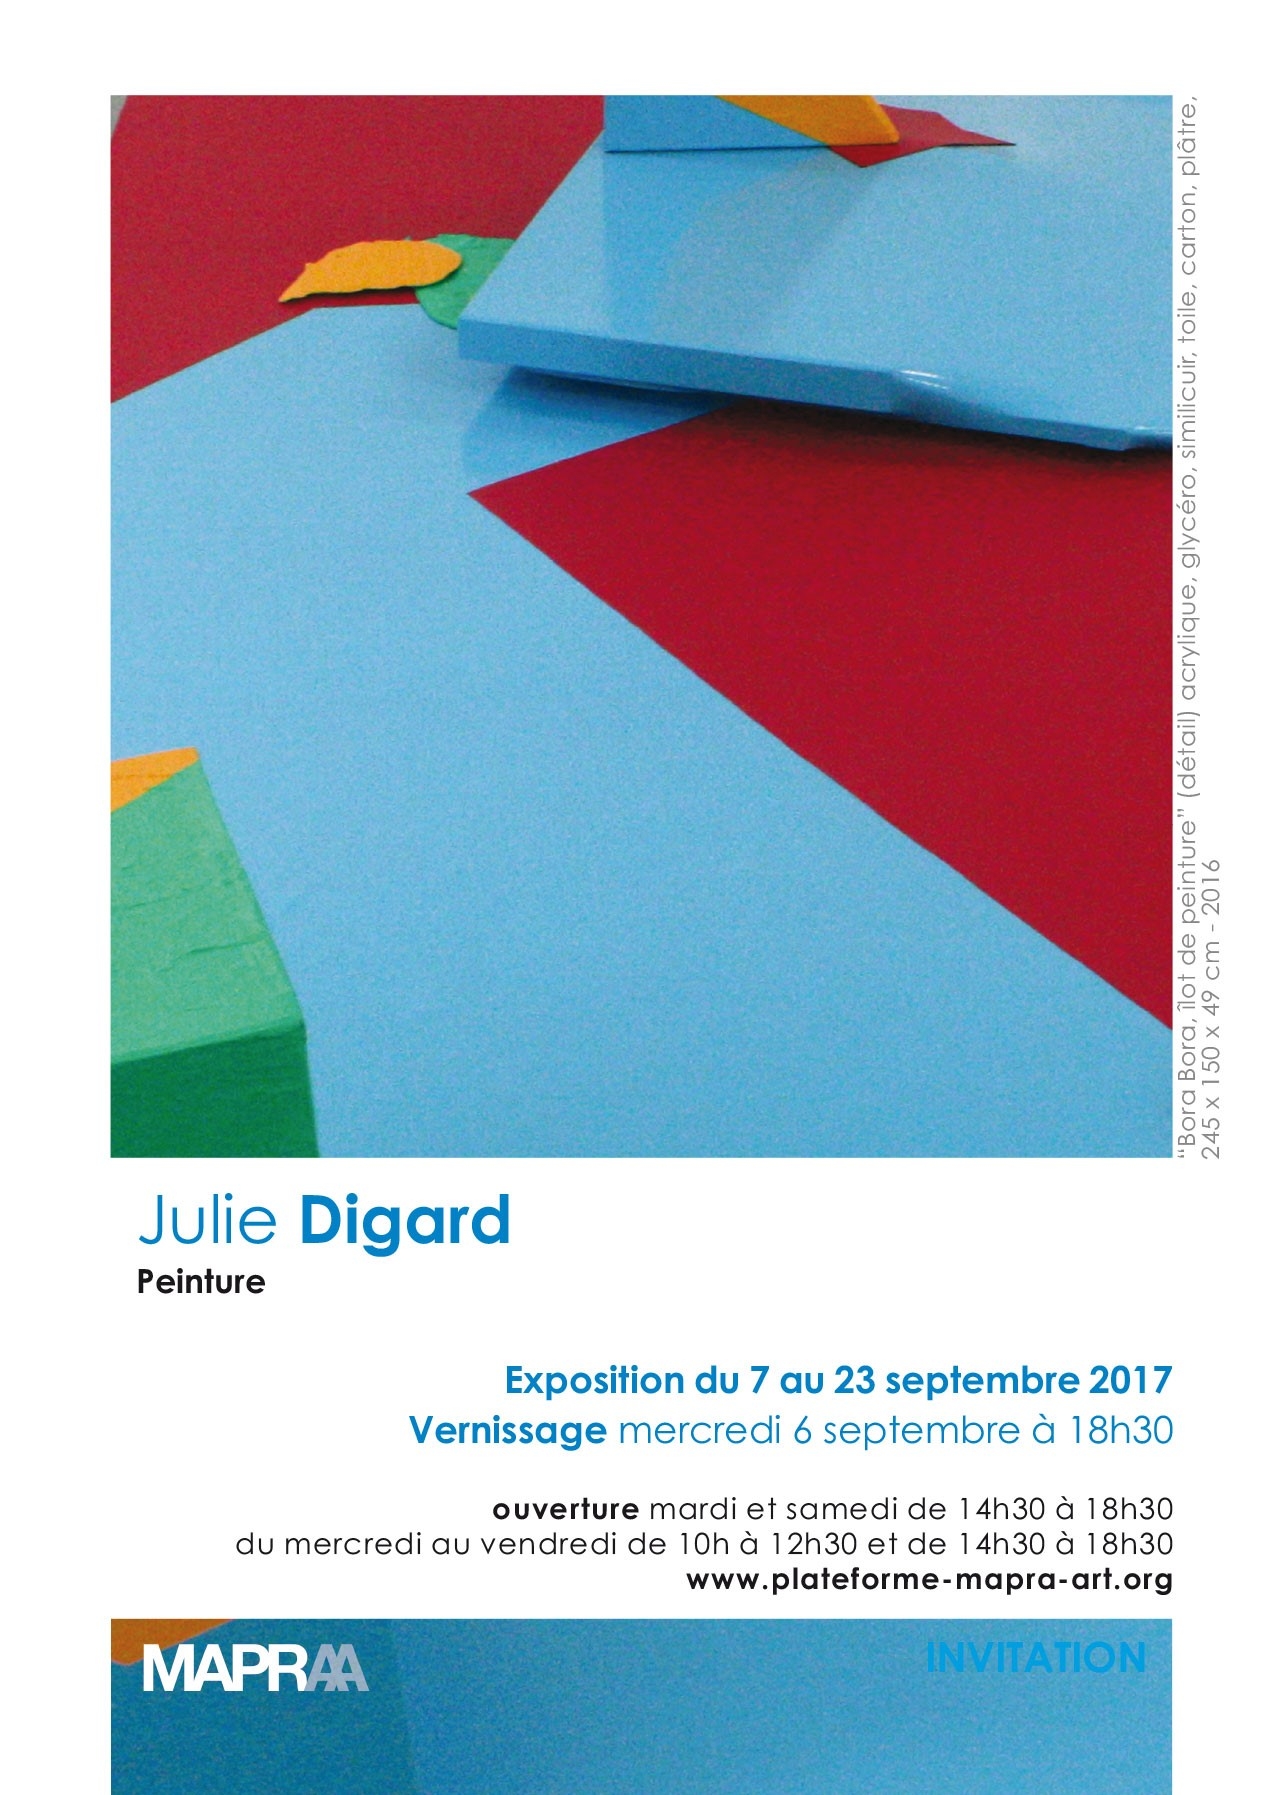 Julie Digard